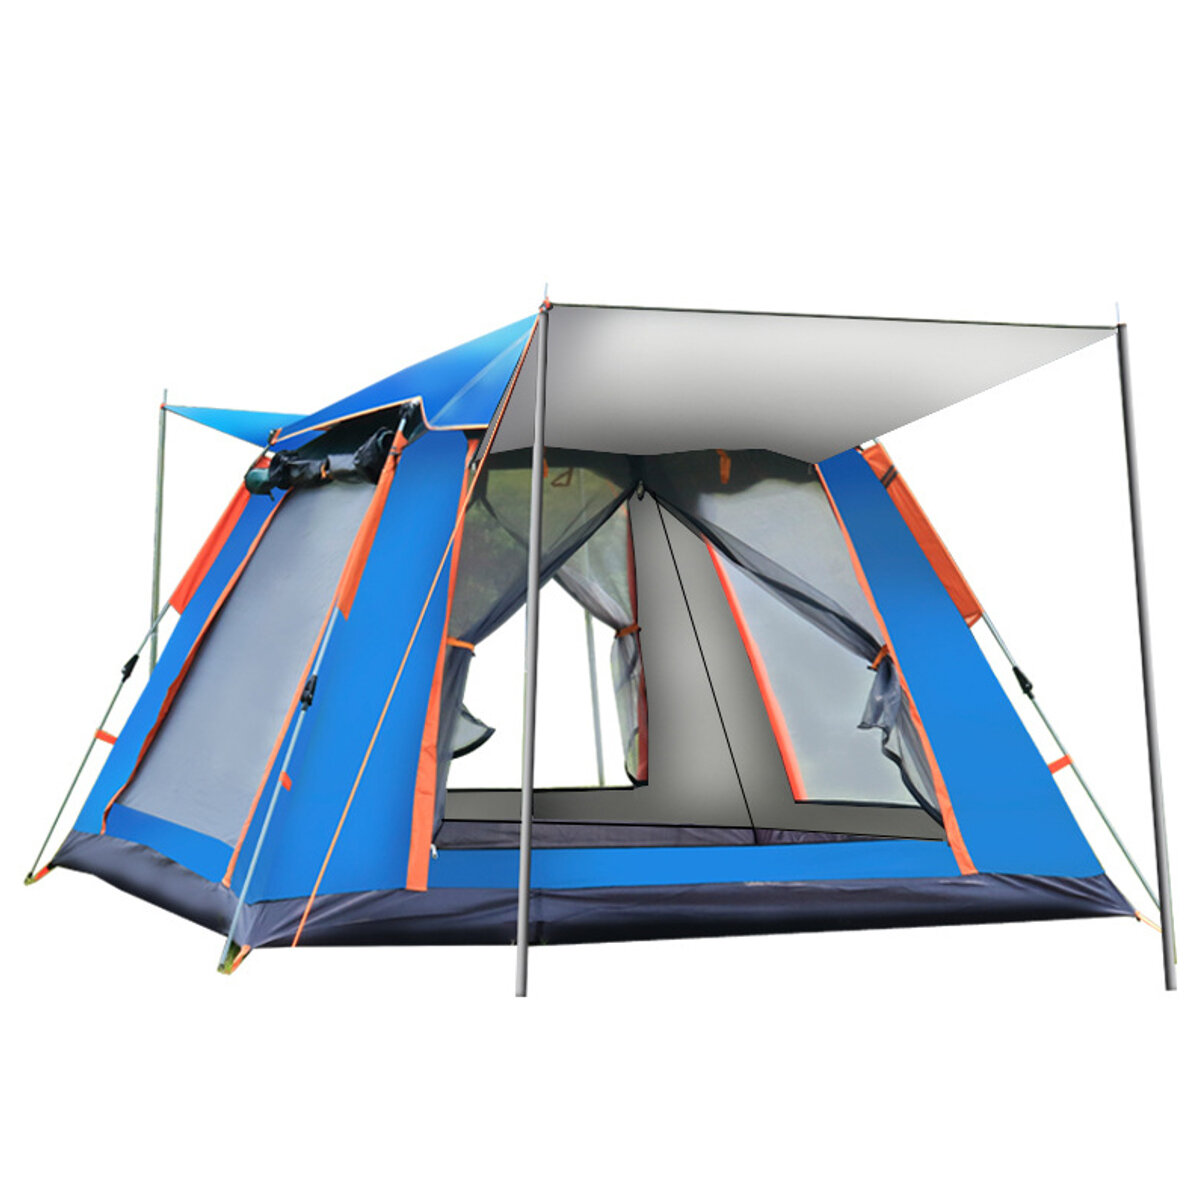 Στα 60.80€ από αποθήκη Κίνας | 4 5 People Fully Automatic Set up Tent UV Protected Family Picnic Travel Sun Shelters Outdoor Rainproof Windproof Camping Tents